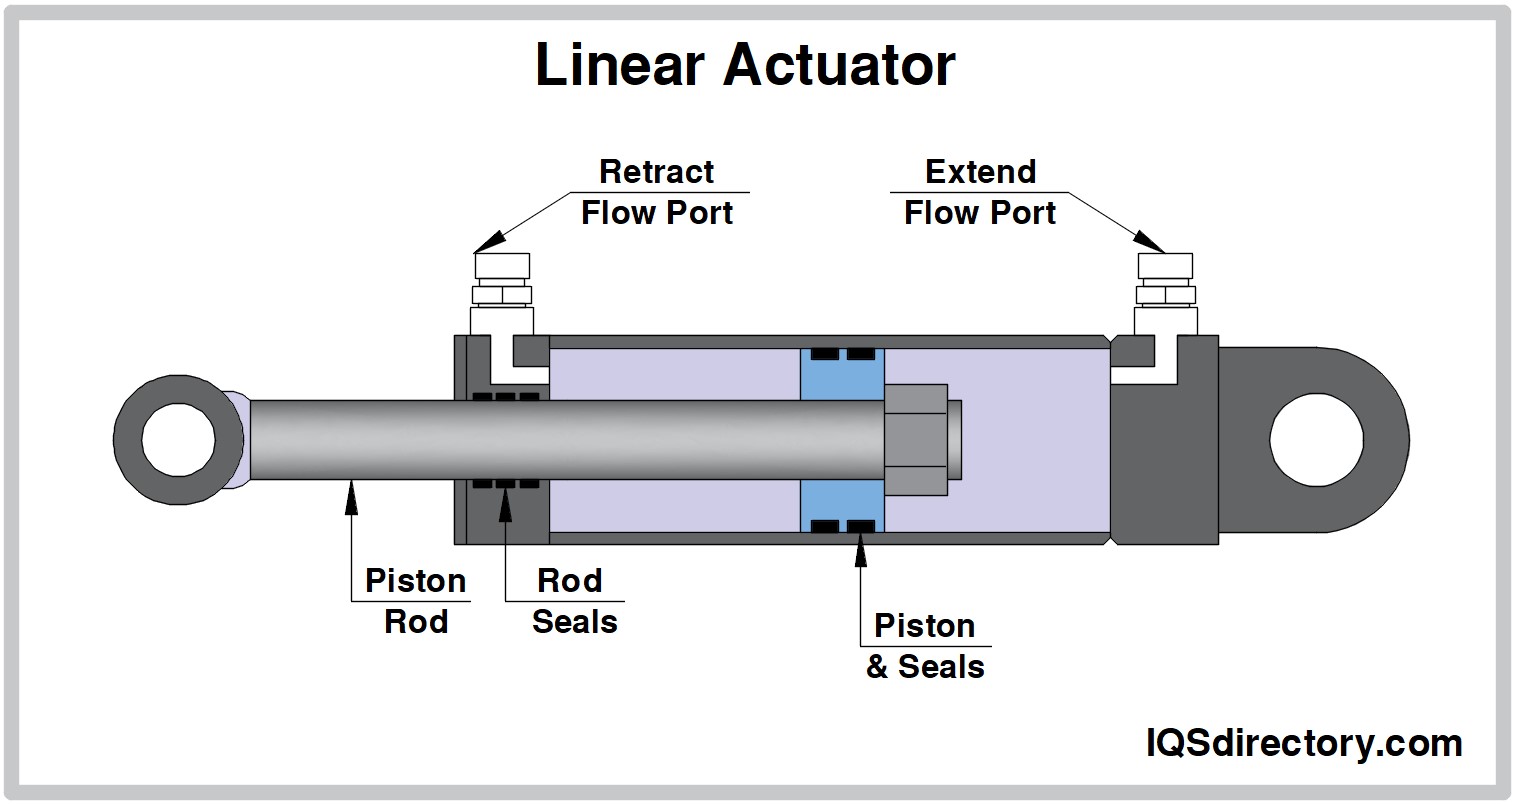 Linear Actuator